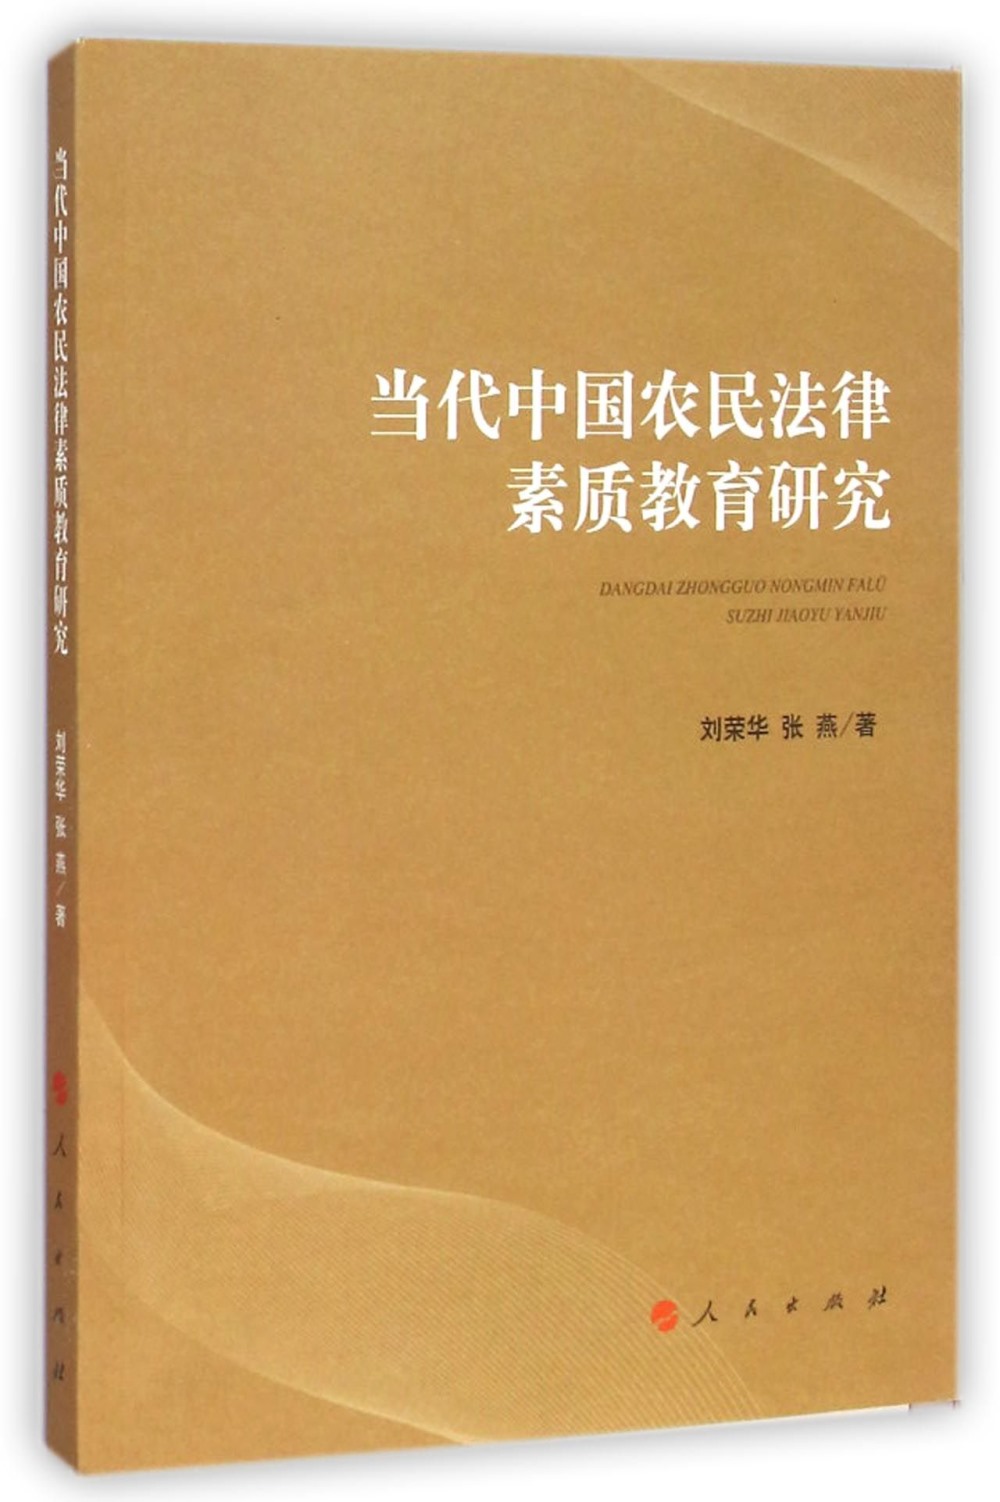 當代中國農民法律素質教育研究